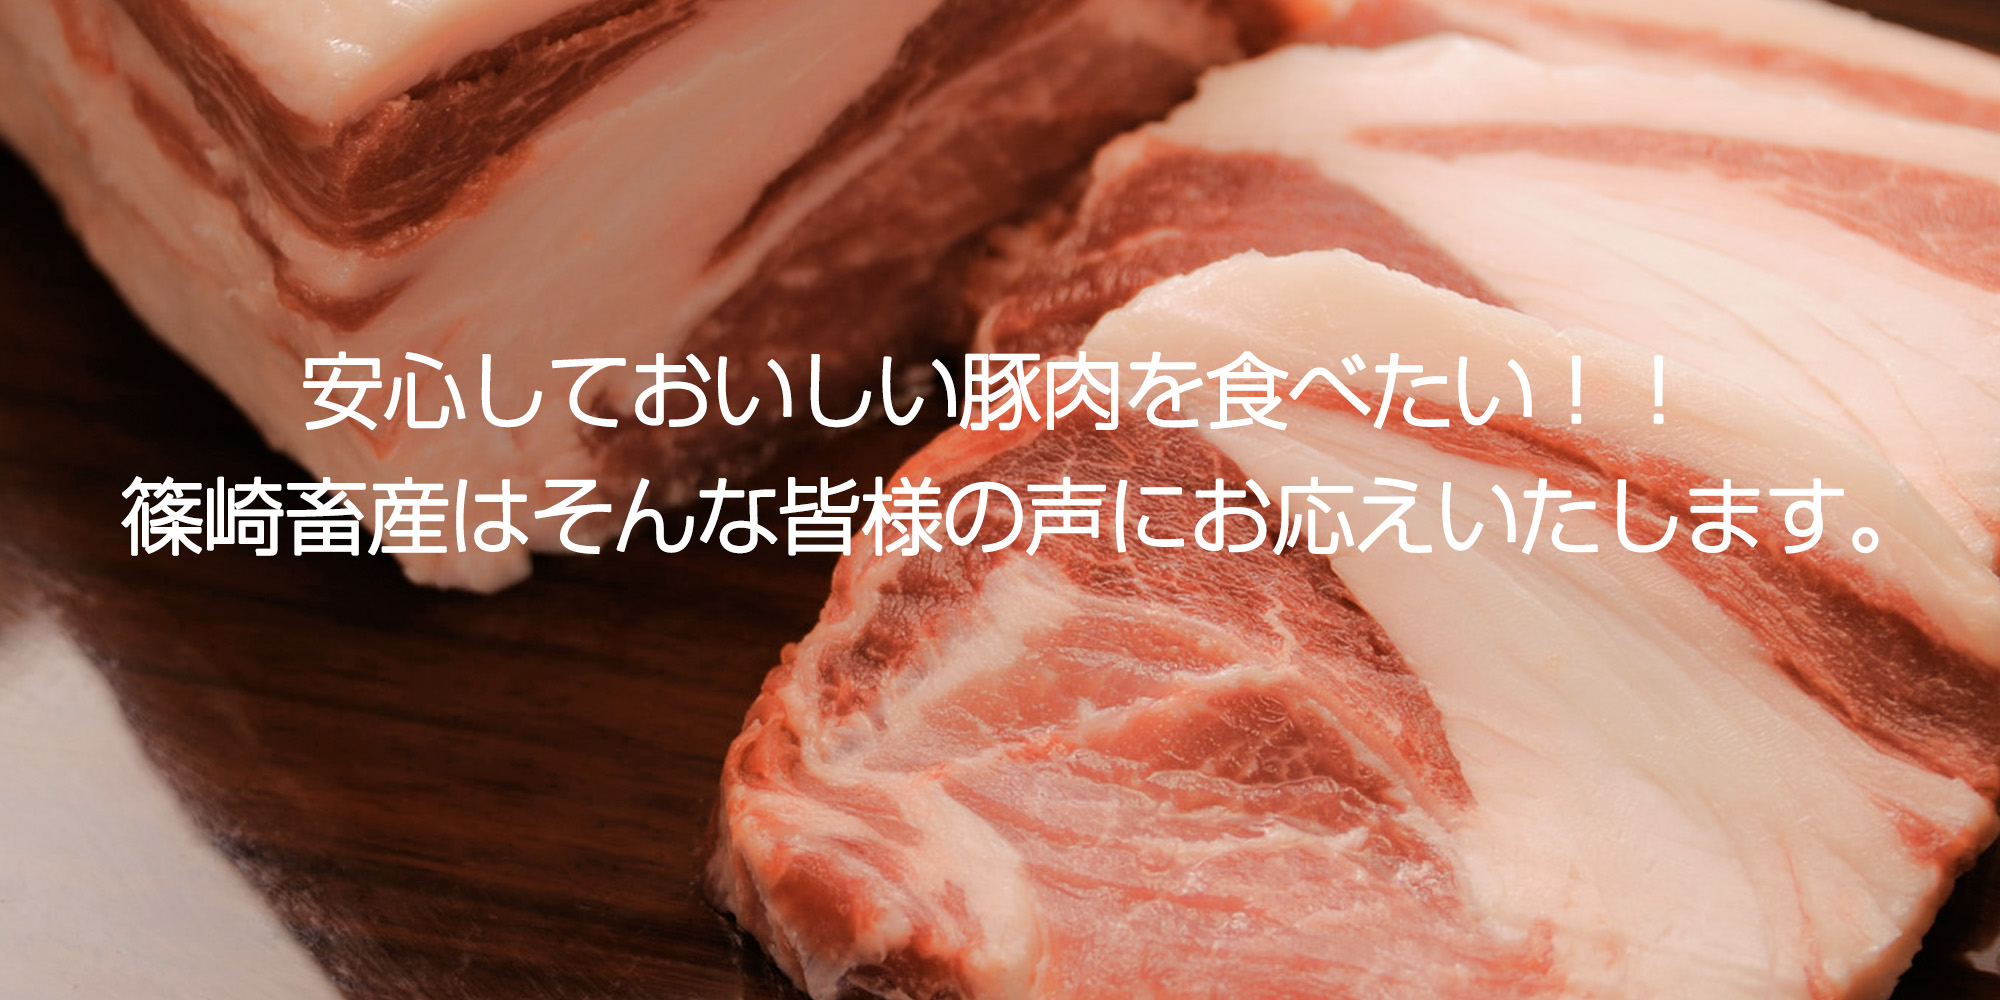 安心しておいしい豚肉を食べたい！篠崎畜産はそんな皆様の声にお応えします。